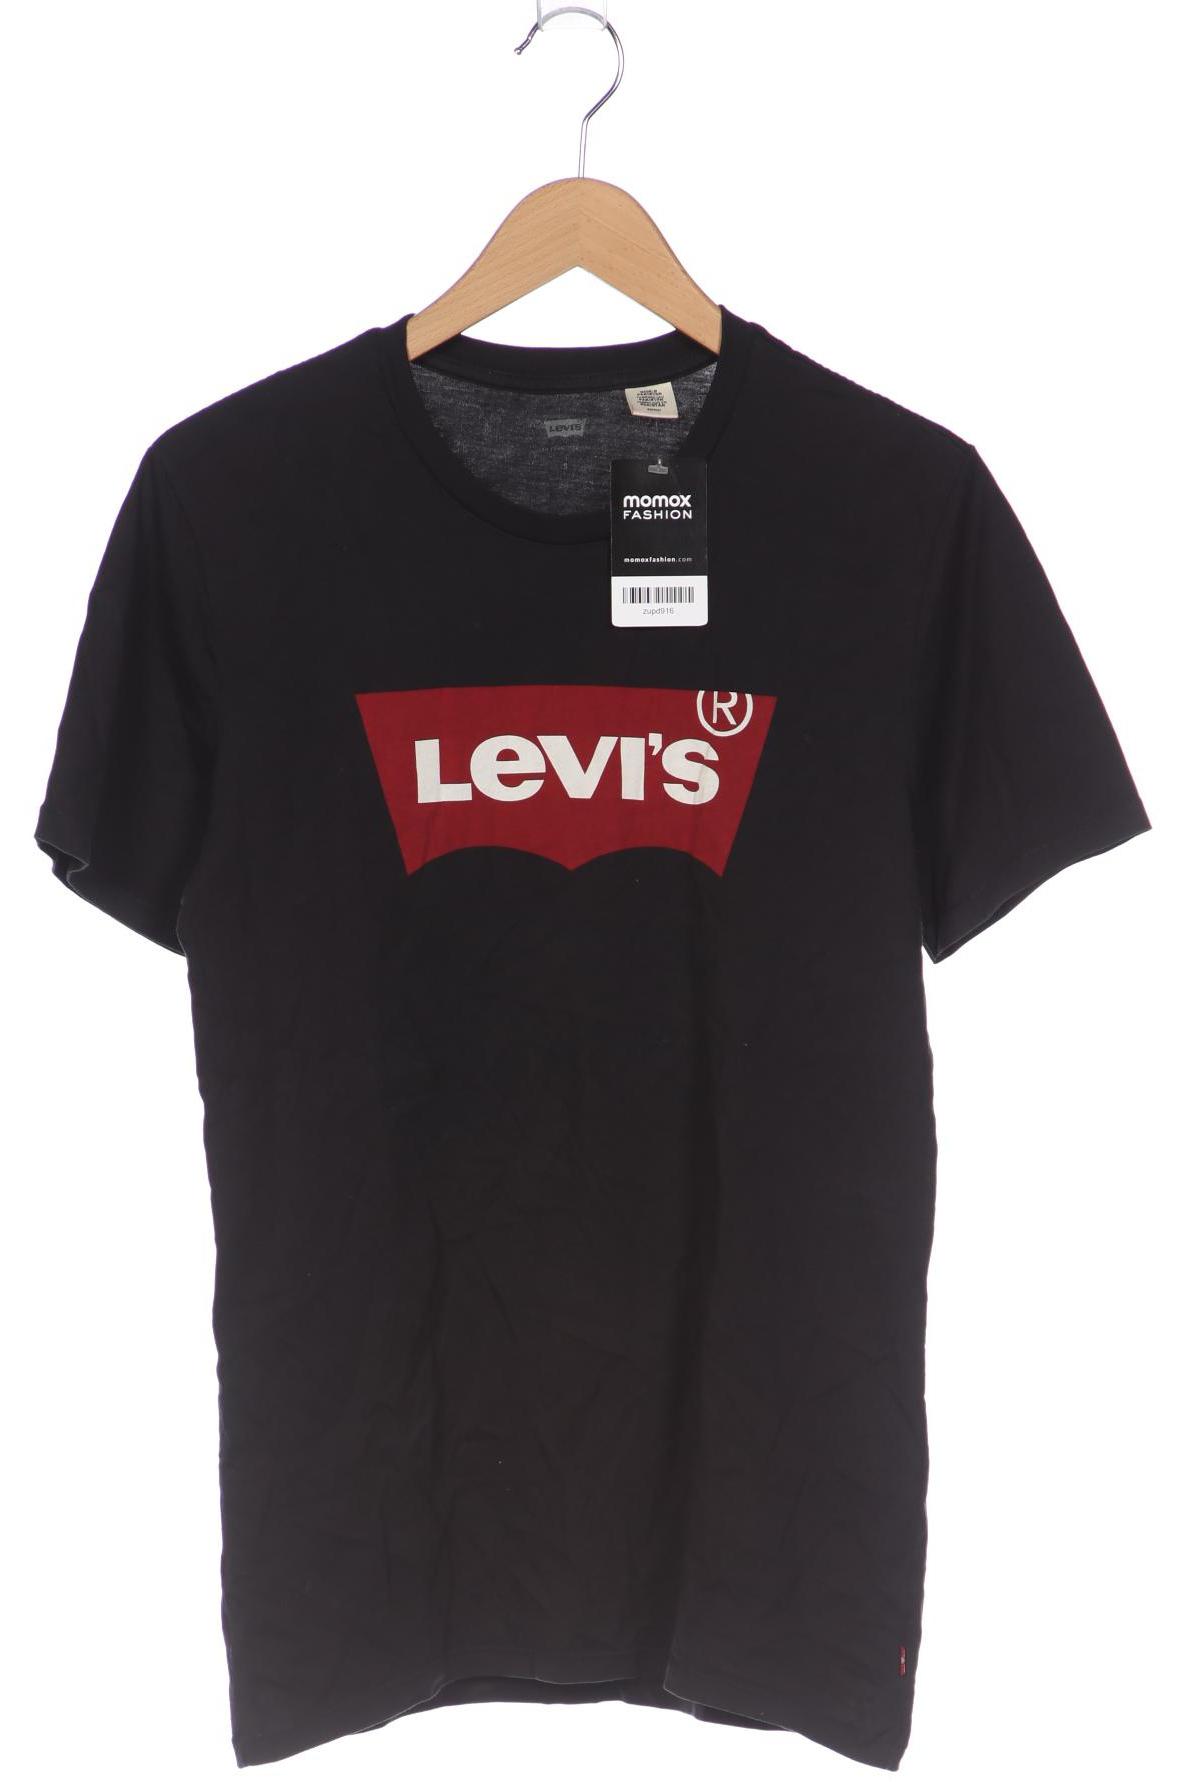 Levis Herren T-Shirt, schwarz von Levis